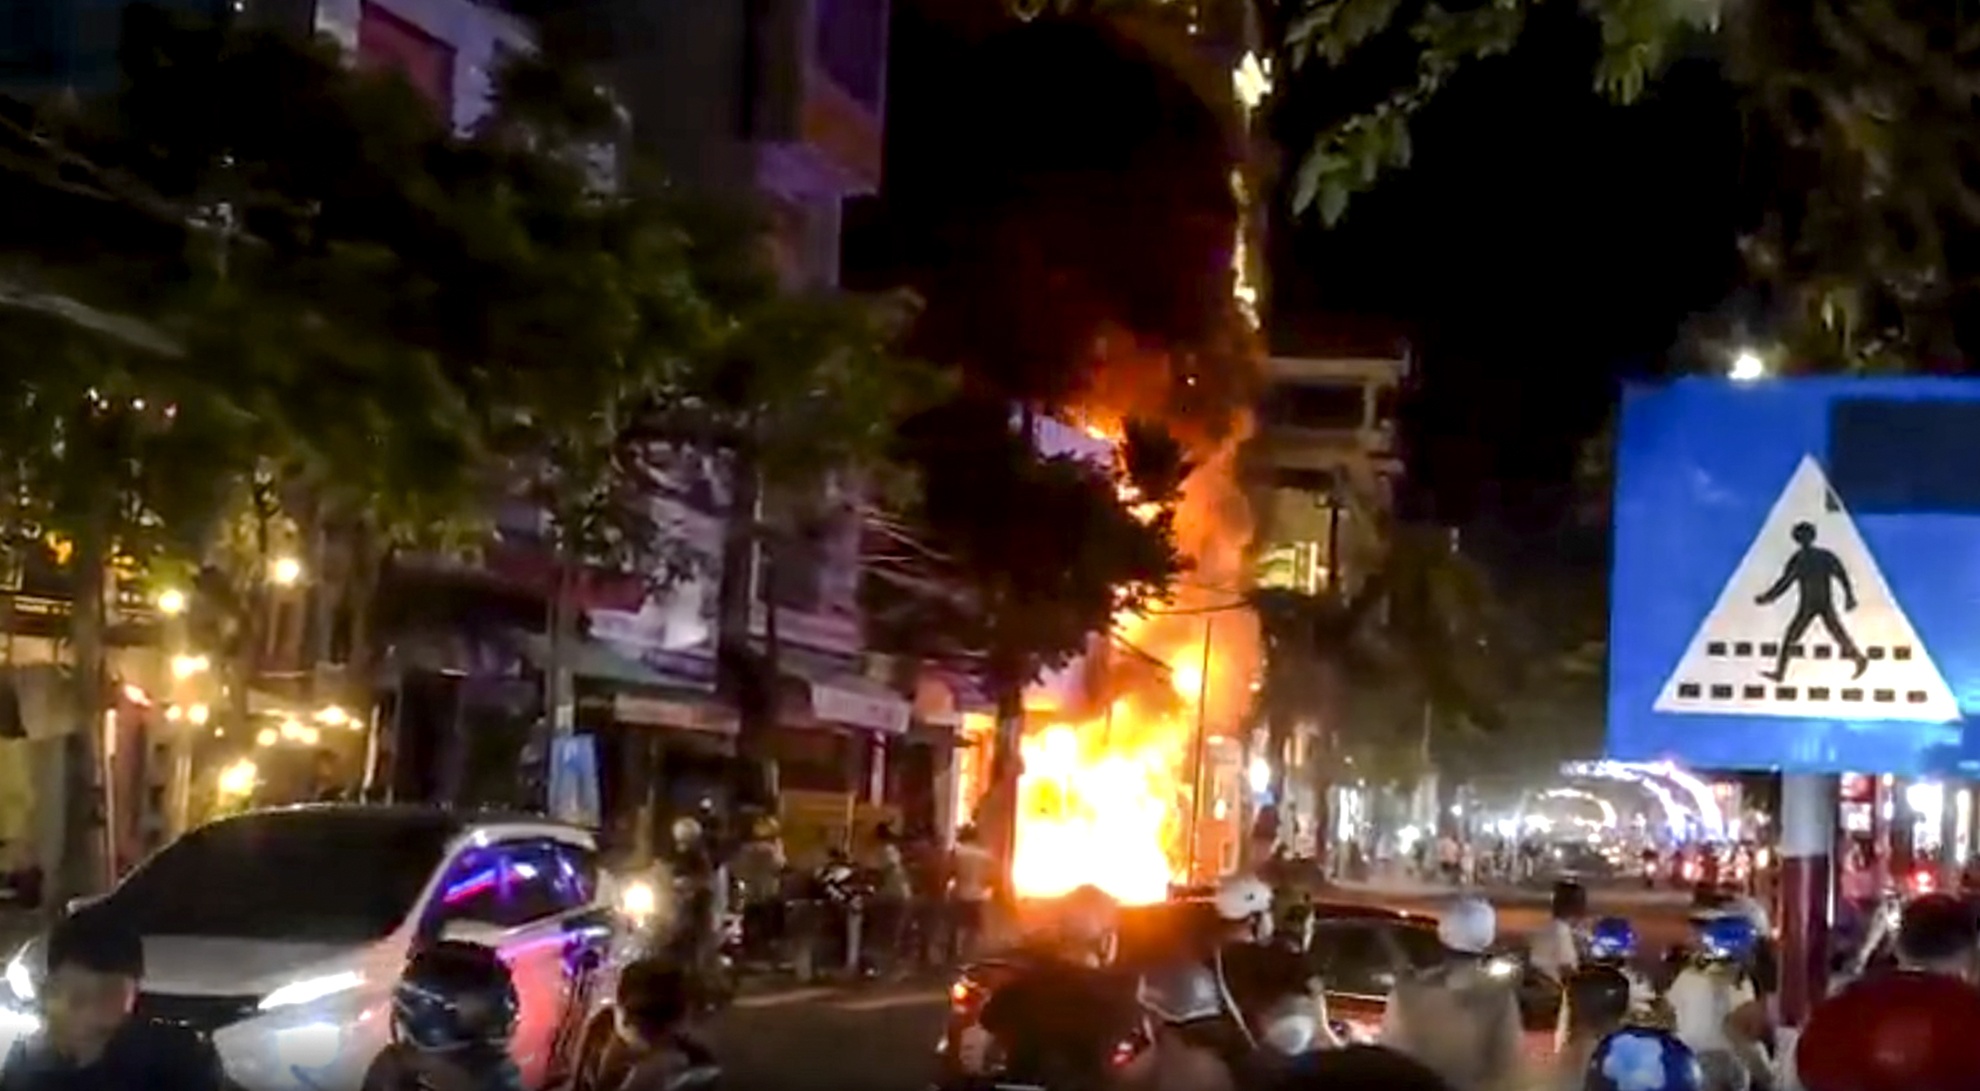 Phong tỏa 3 ngôi nhà bị cháy rụi ở Quảng Ngãi để điều tra vụ hỏa hoạn - Ảnh 1.